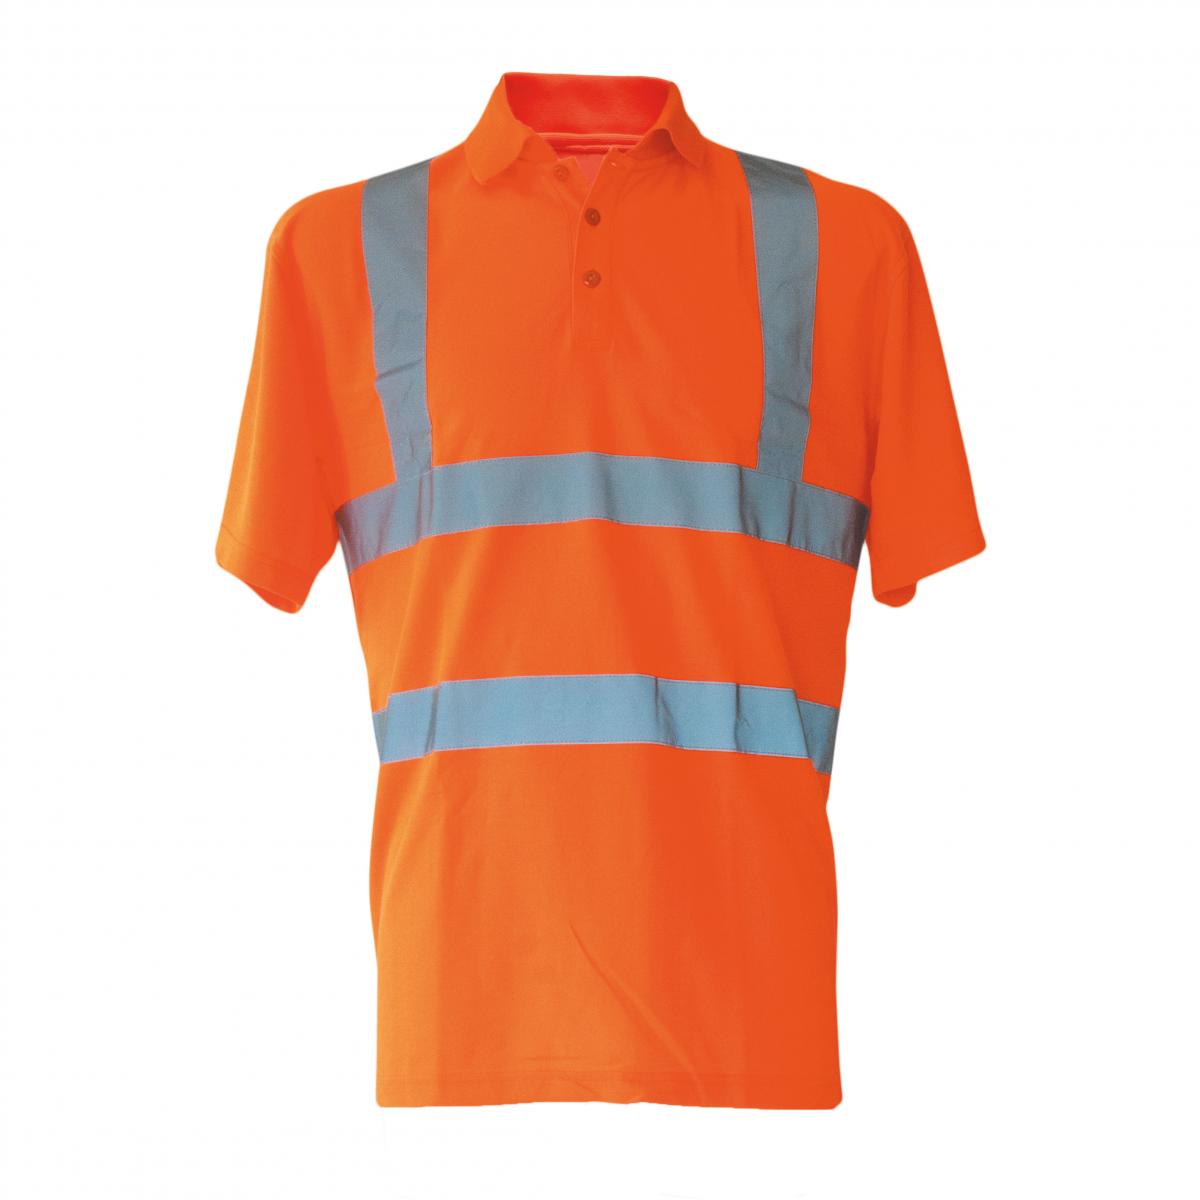 Hersteller: Korntex Herstellernummer: KXPOLO Artikelbezeichnung: Herren Hi-Viz Arbeits Polo Shirt Basic EN ISO 20471 Farbe: Signal Orange